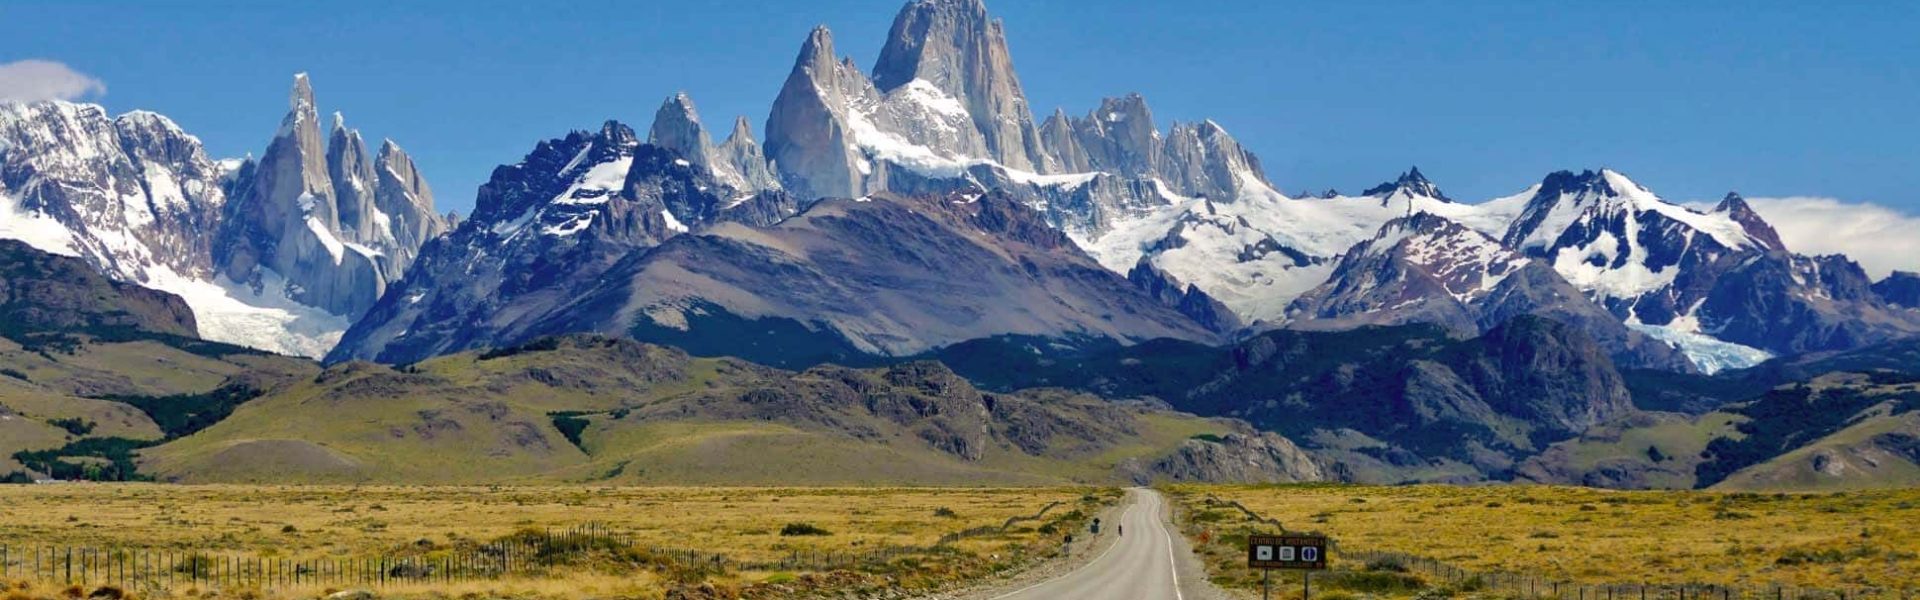 Carretera con vistas a las montañas de la Patagonia